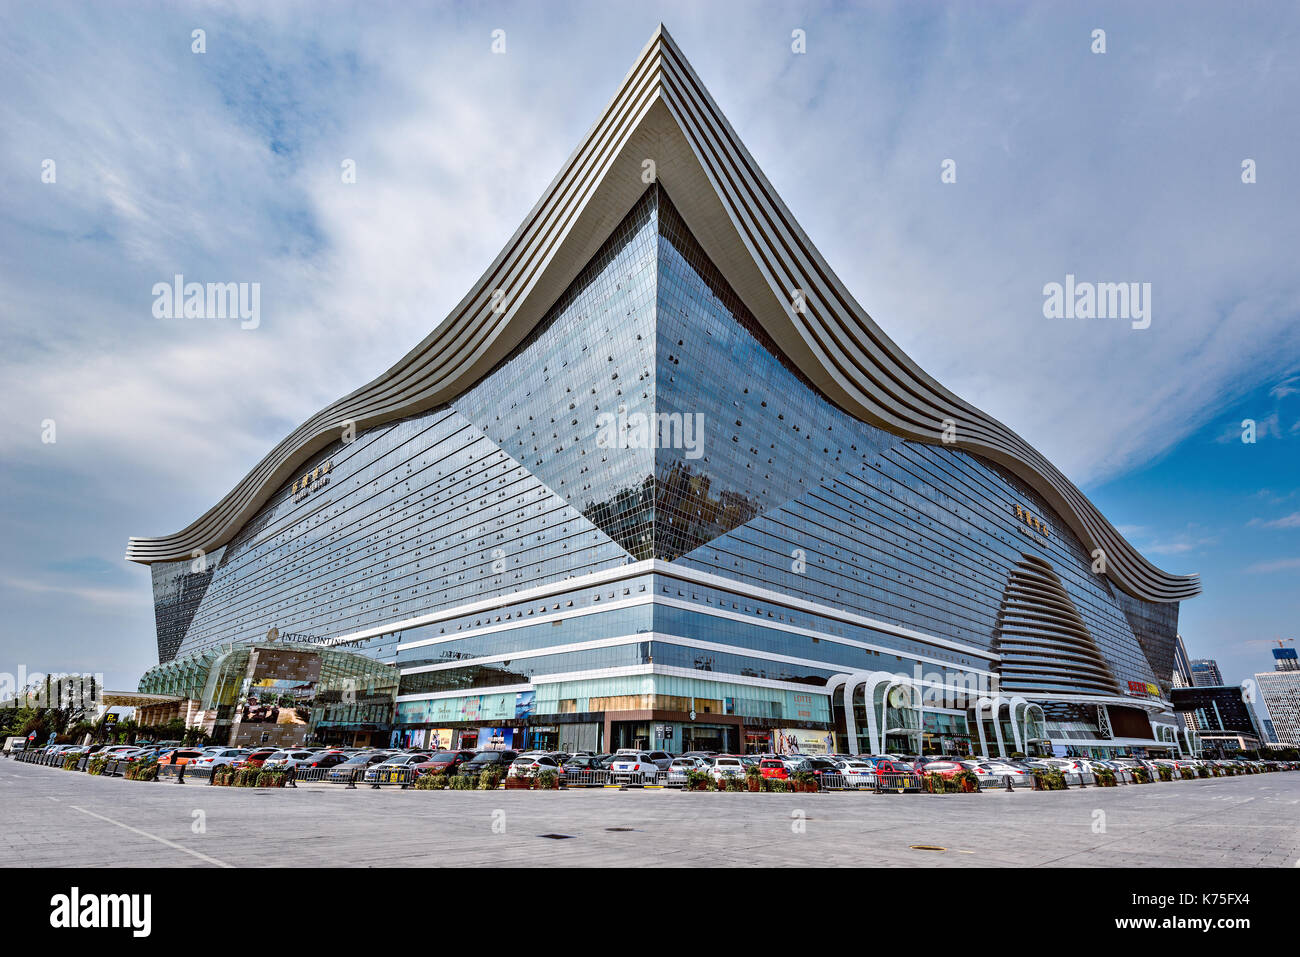 Chengdu, Chine - le 29 octobre 2016 : Nouveau siècle centre mondial est de 100 mètres de haut avec 1 700 000 mètres carrés de surface de plancher, ce qui en fait le larg Banque D'Images